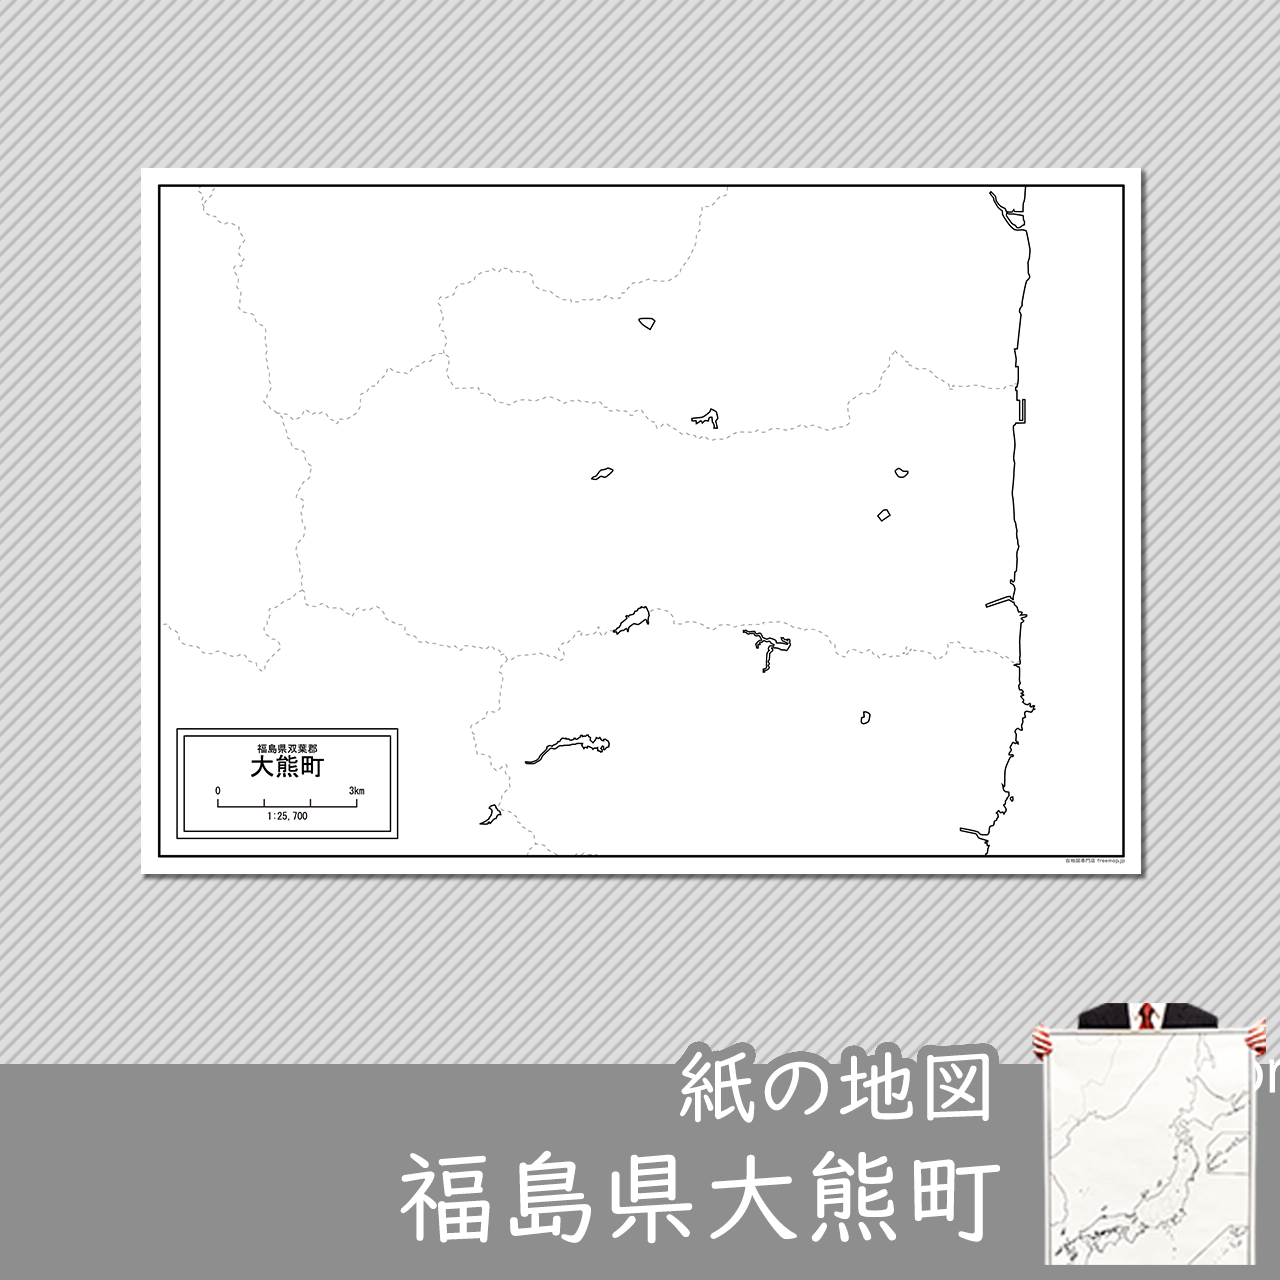 大熊町の紙の白地図のサムネイル